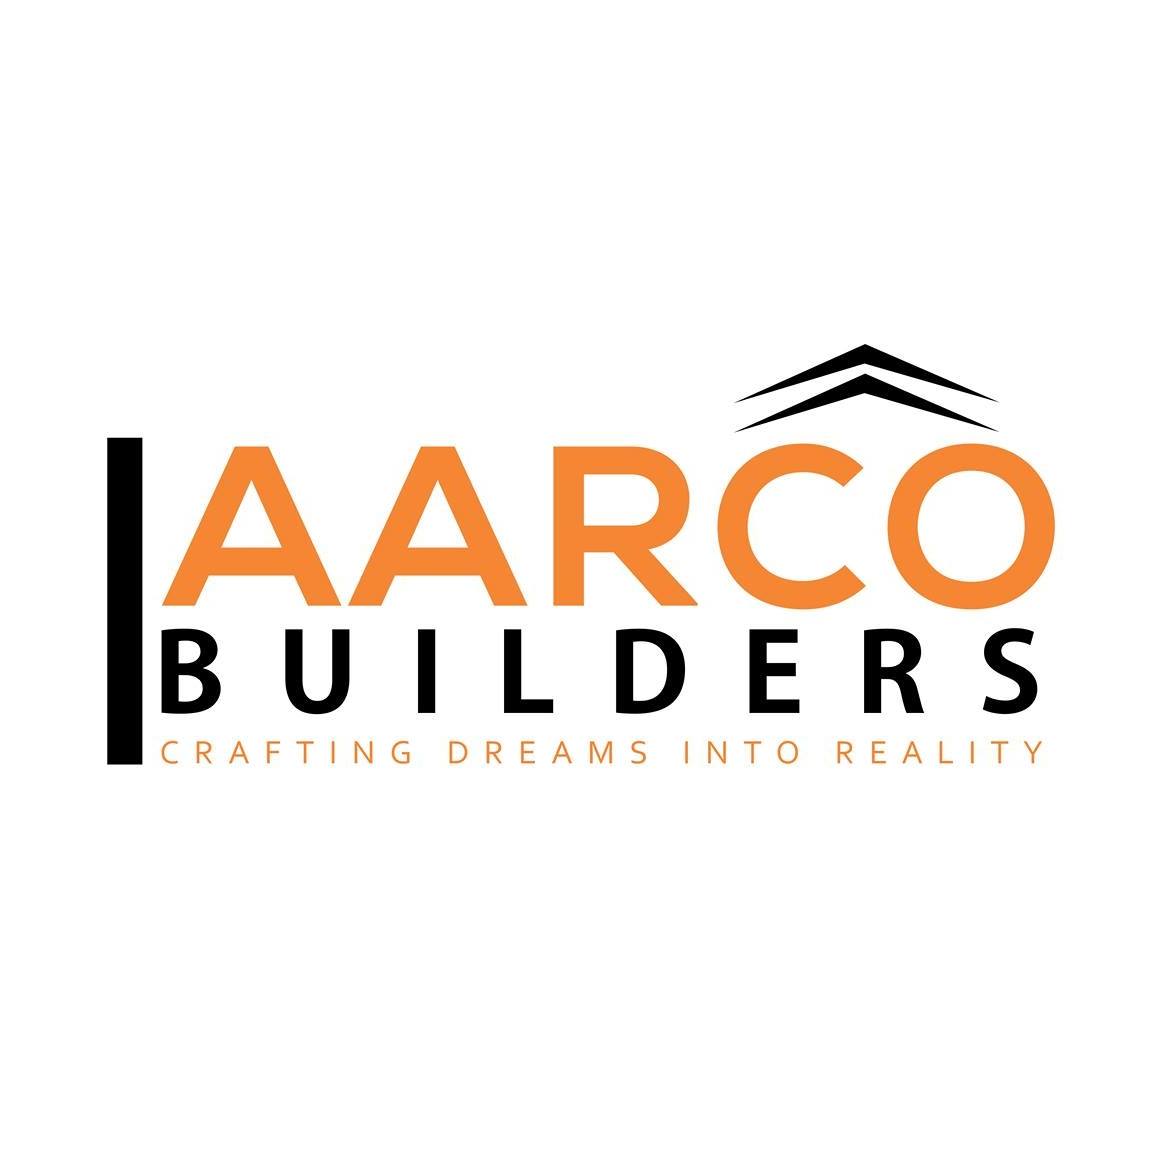 AARCO BUILDERS - Logo